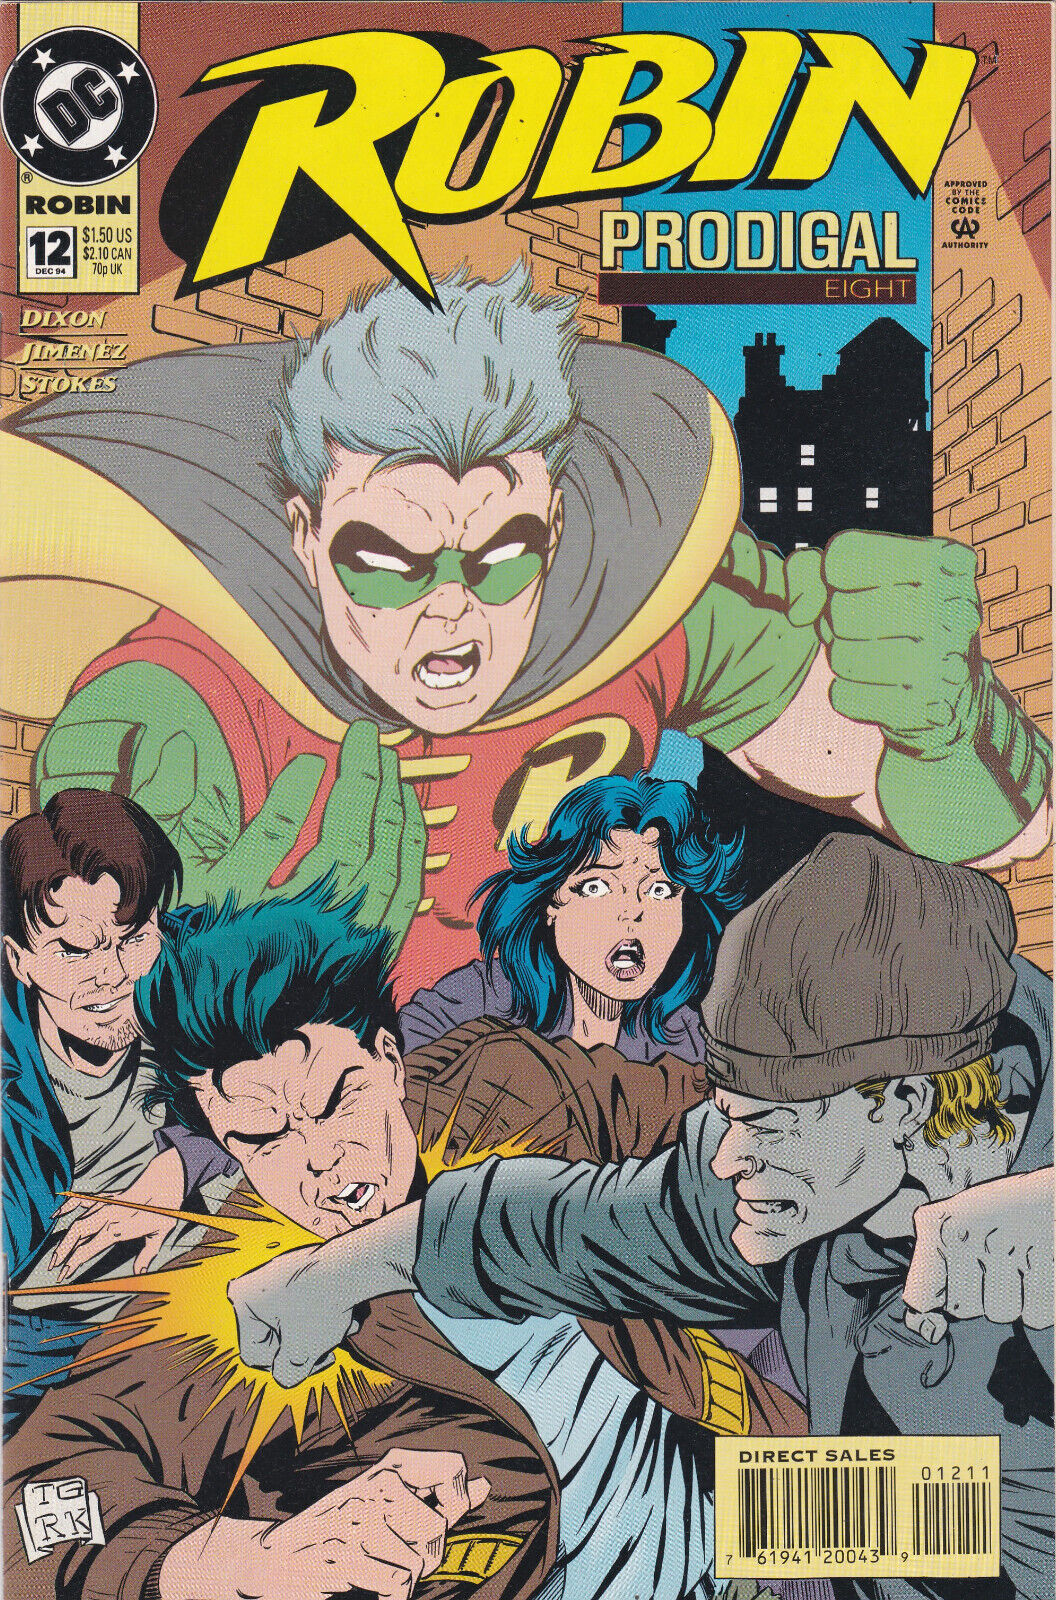 Robin #12, Vol. 2 (1993-2009) DC Comics, High Grade